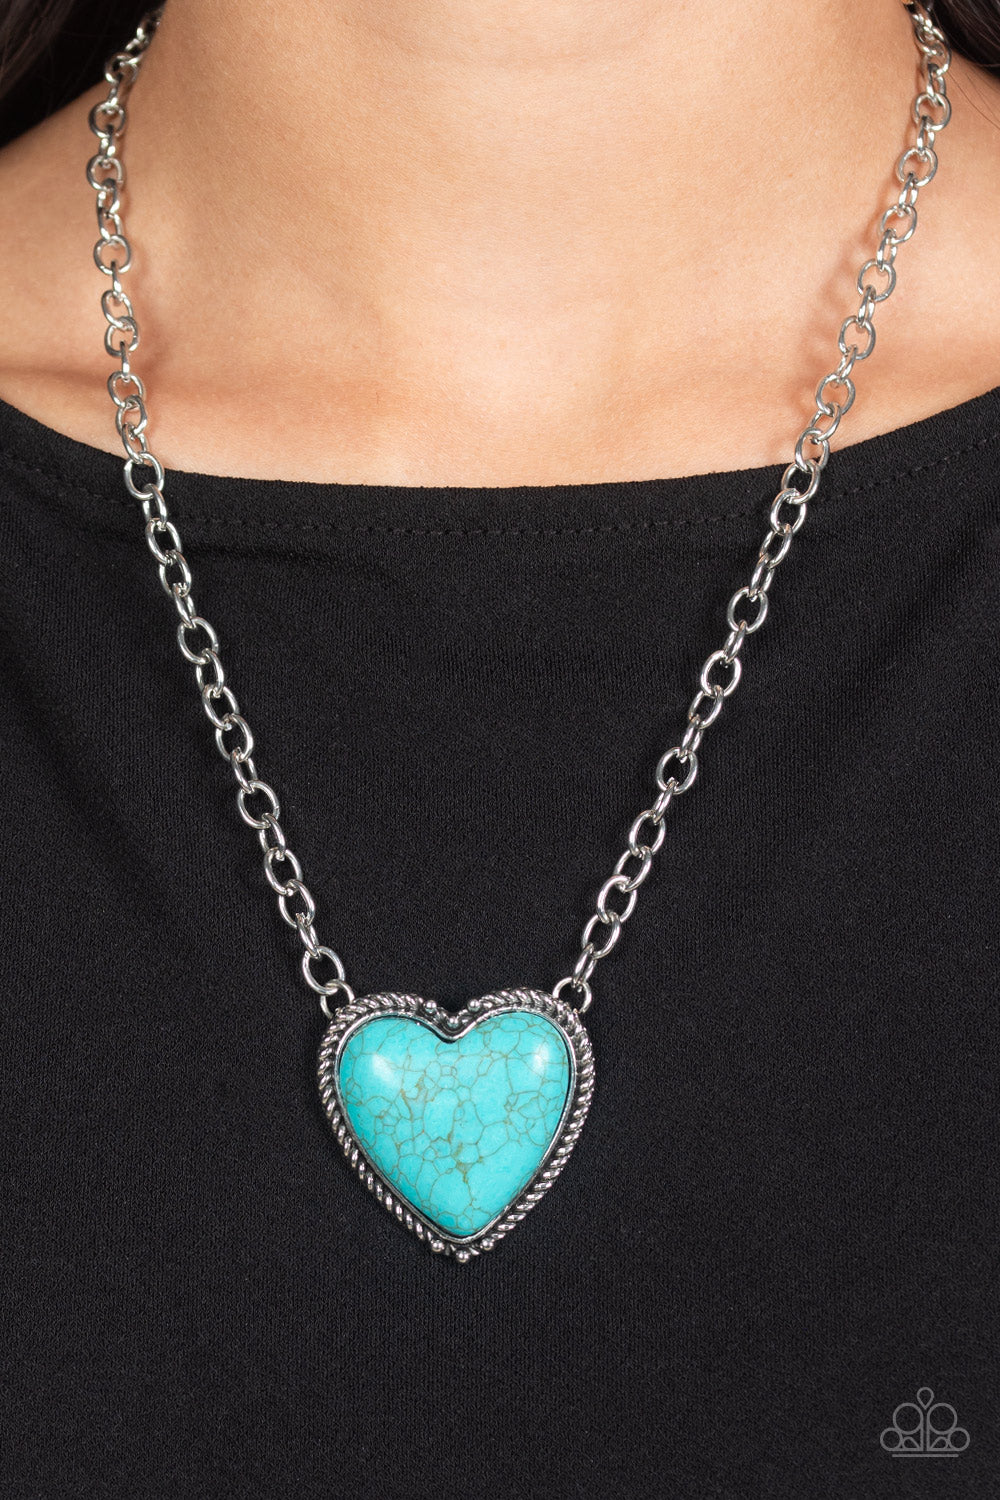 Paparazzi “Authentic Admirer” Blue Necklace Earring Set - Cindysblingboutique